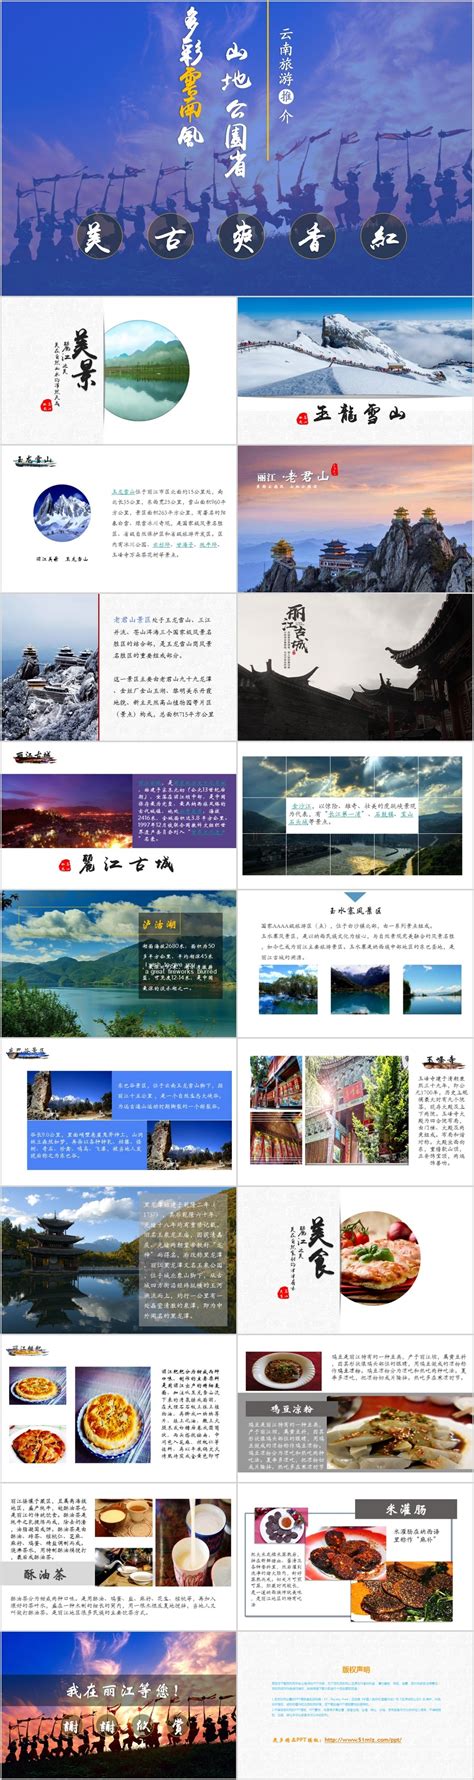 丽江旅游昆明大理丽江西双版纳风景优美海报模板图片下载 - 觅知网